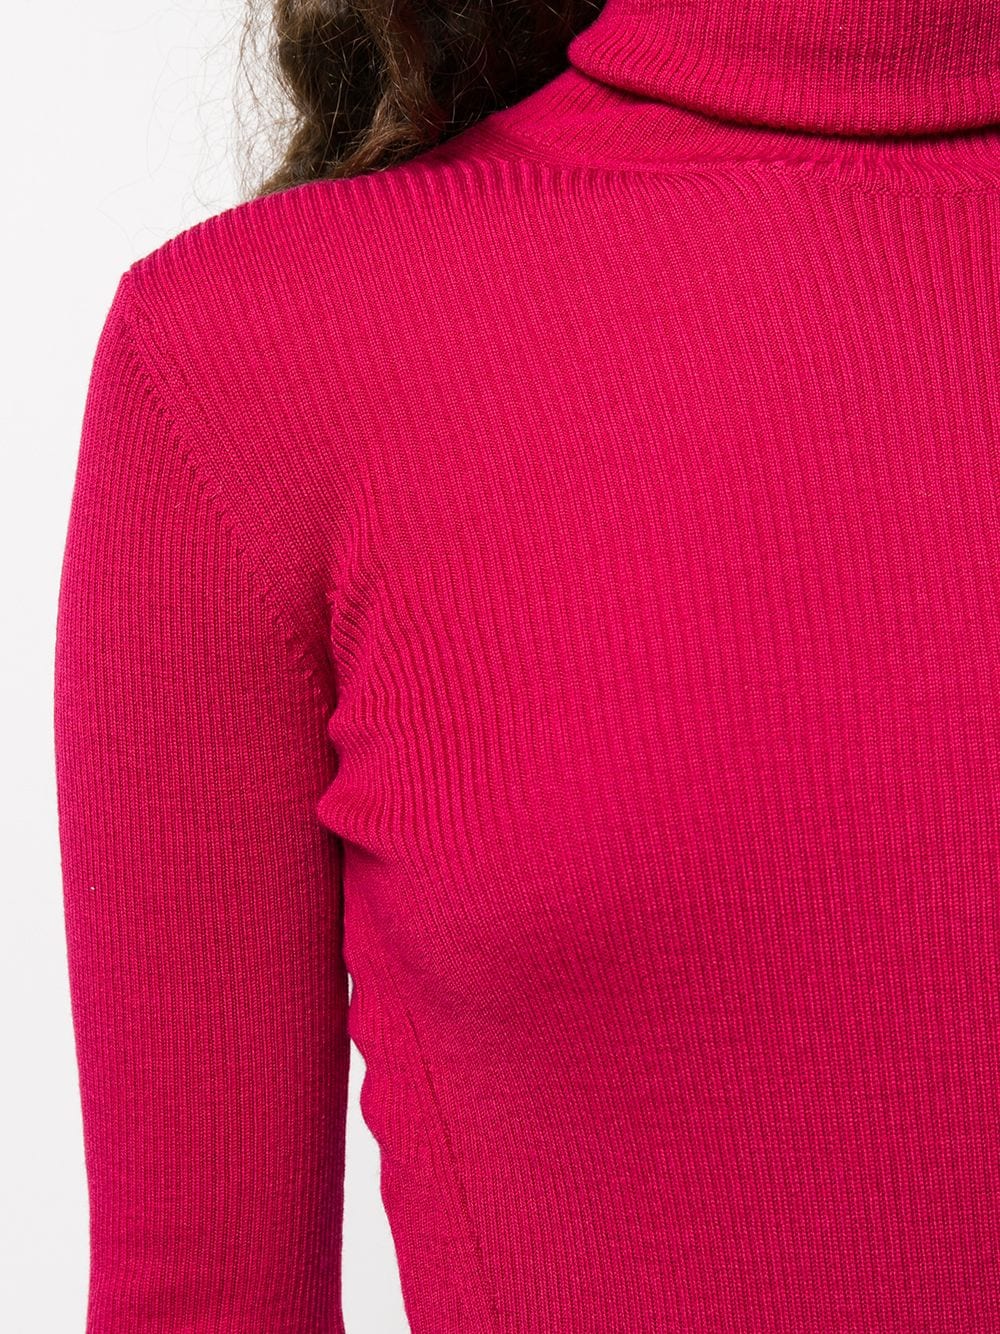 фото Closed приталенный свитер с высоким воротником